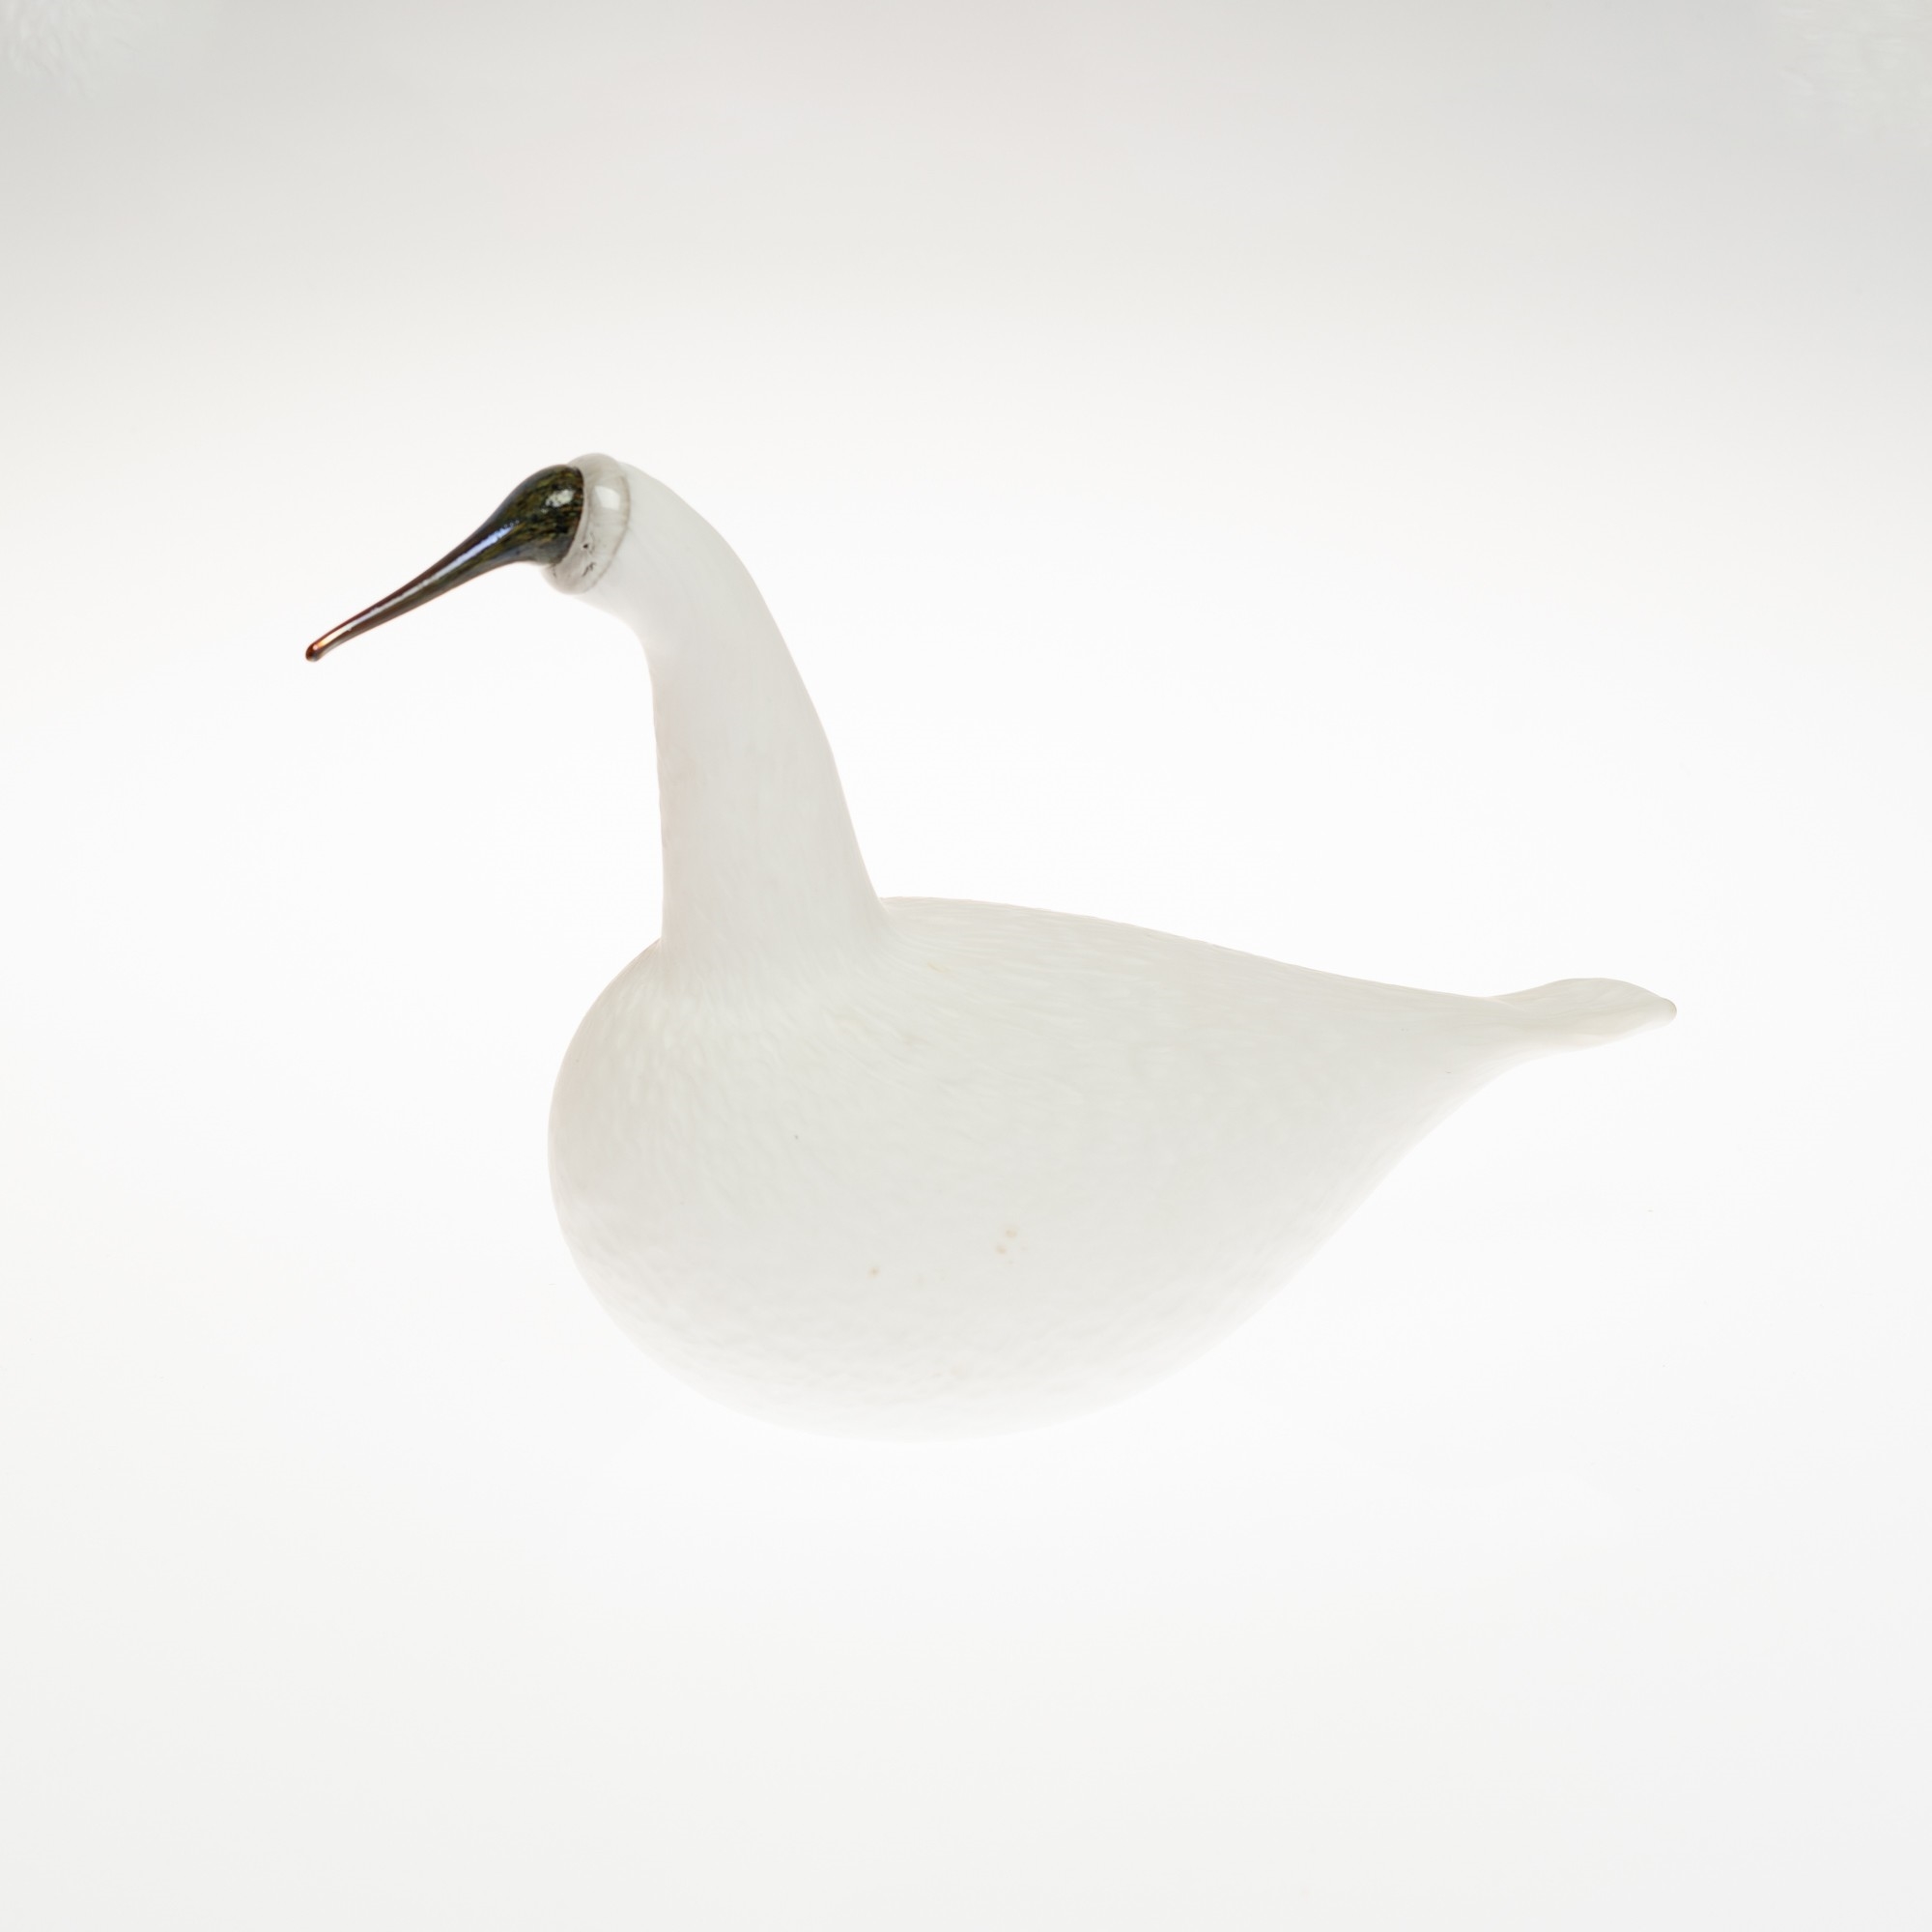 Decorative bird, Whooper swan, Iittala